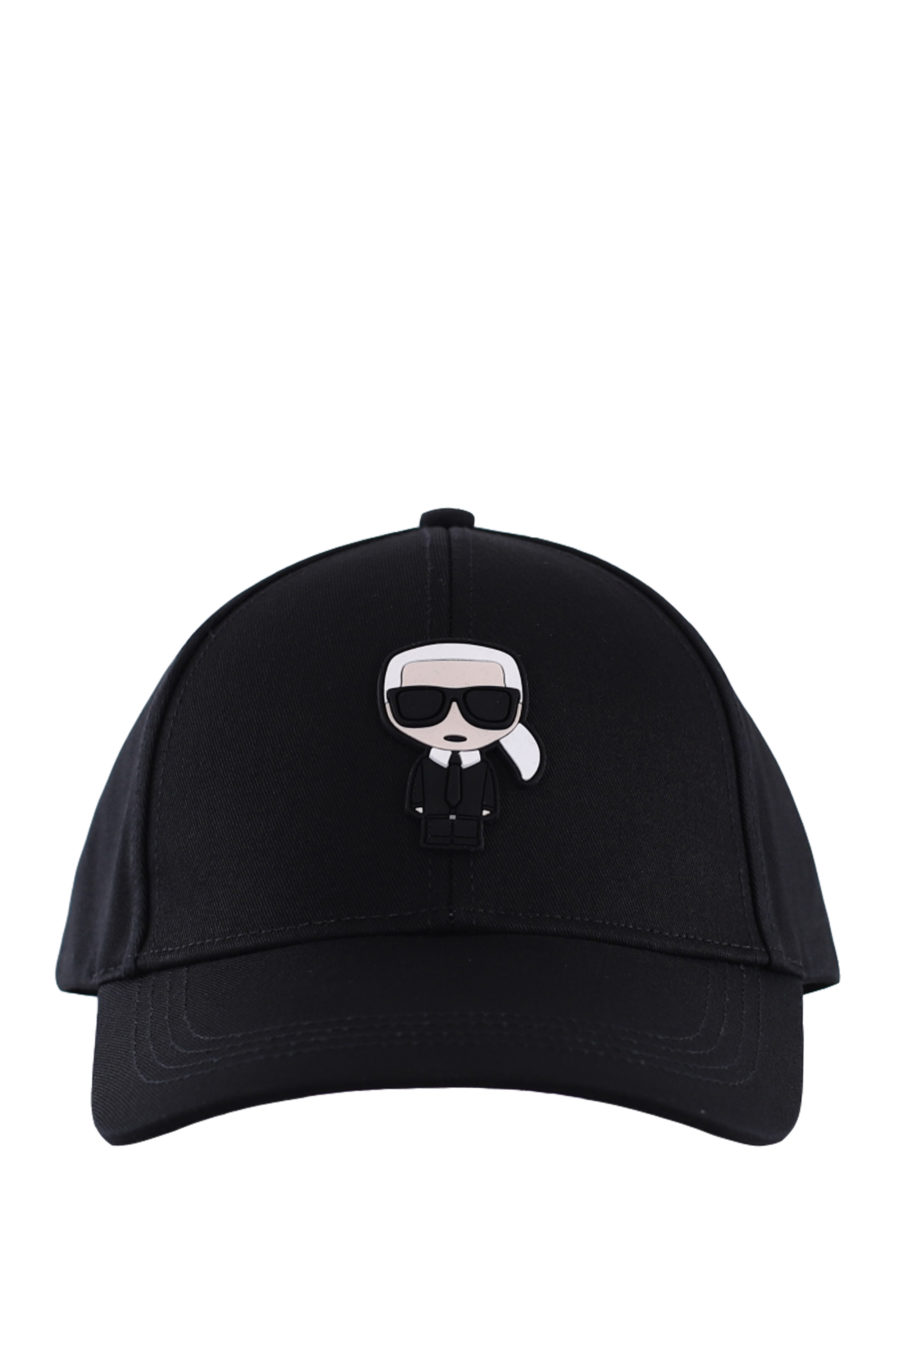 Black cap "ikonik" - IMG 0193